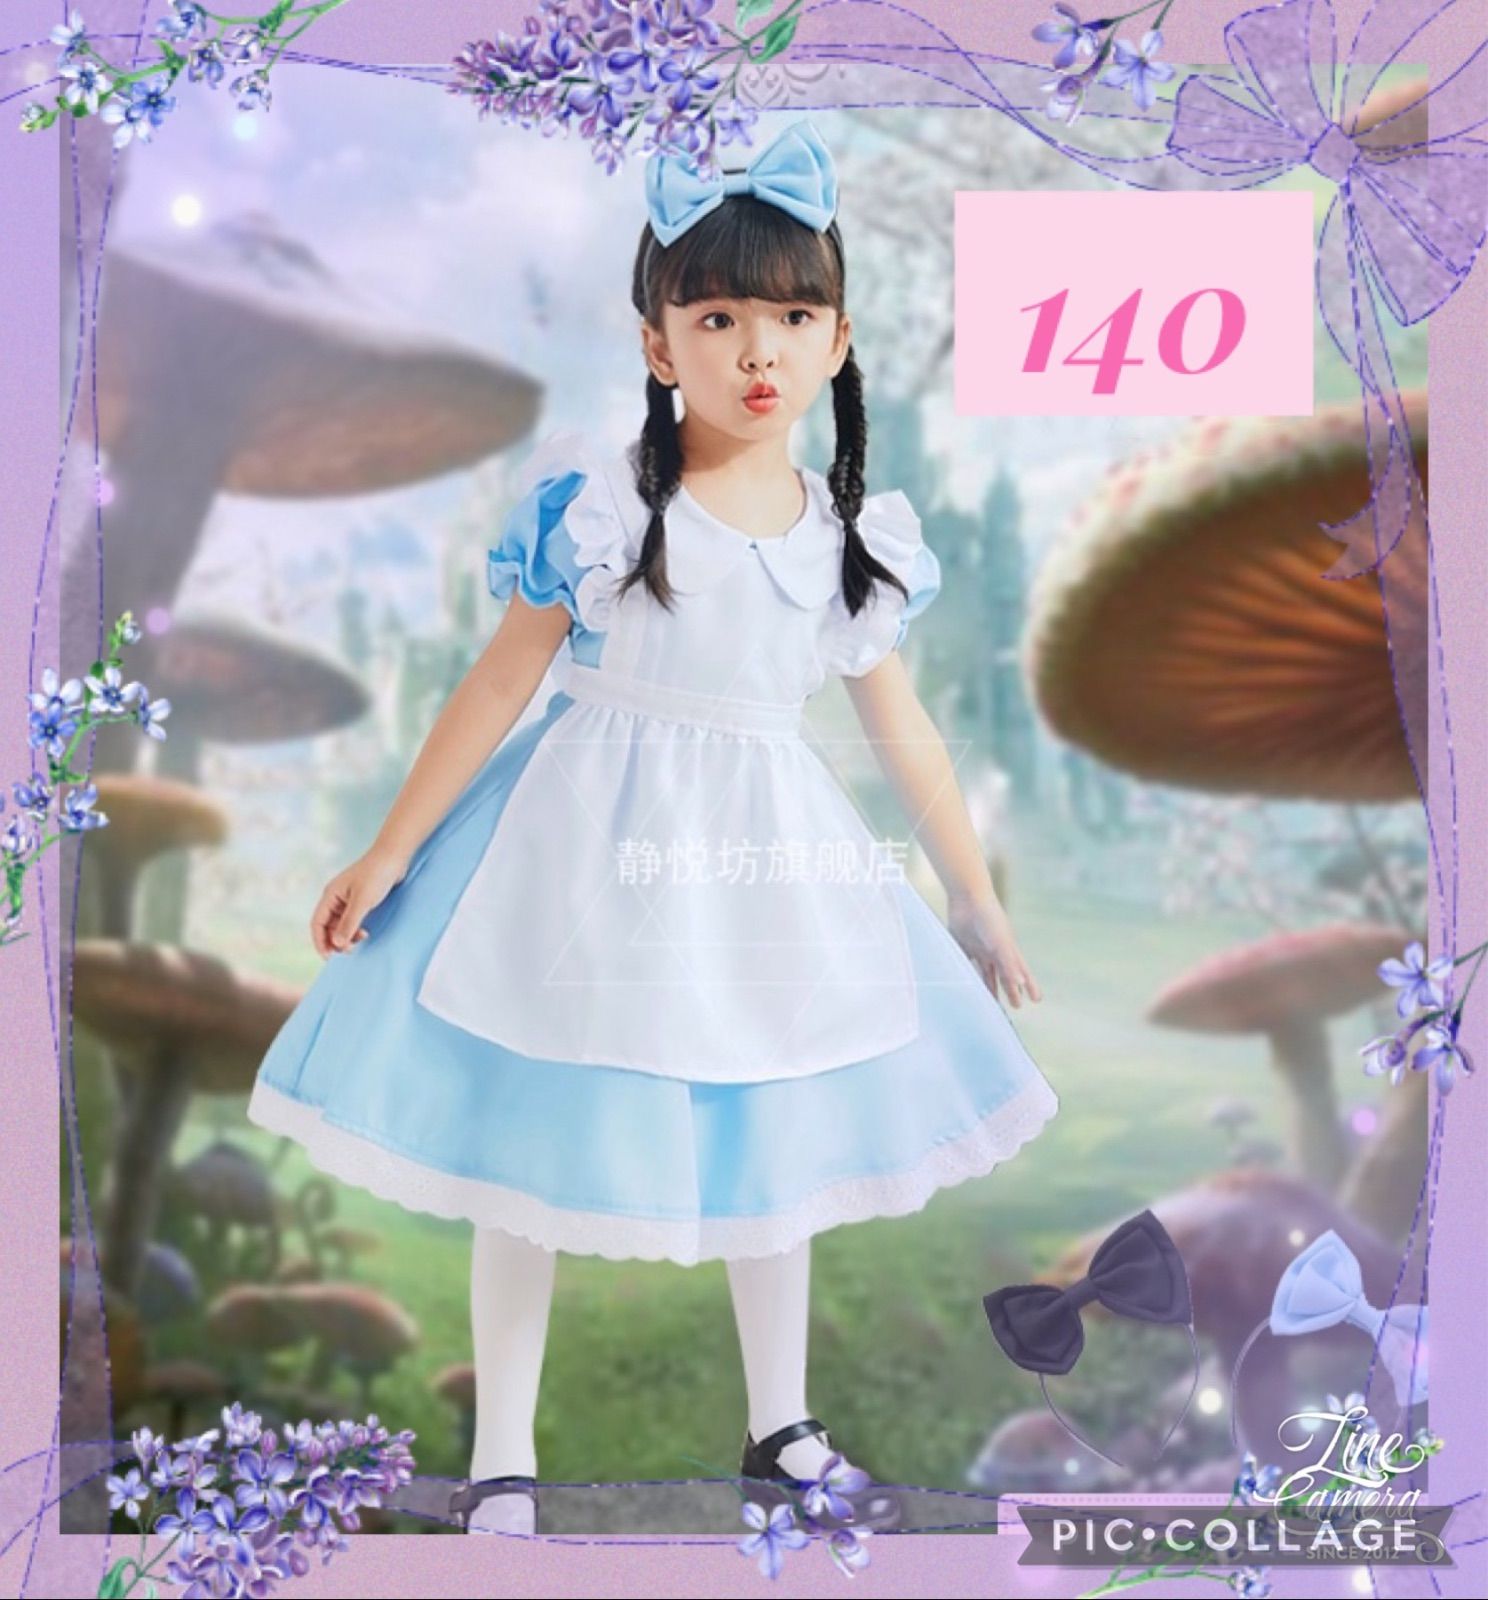 140 アリス ドレス ワンピース ディズニー 女の子 プリンセスドレス